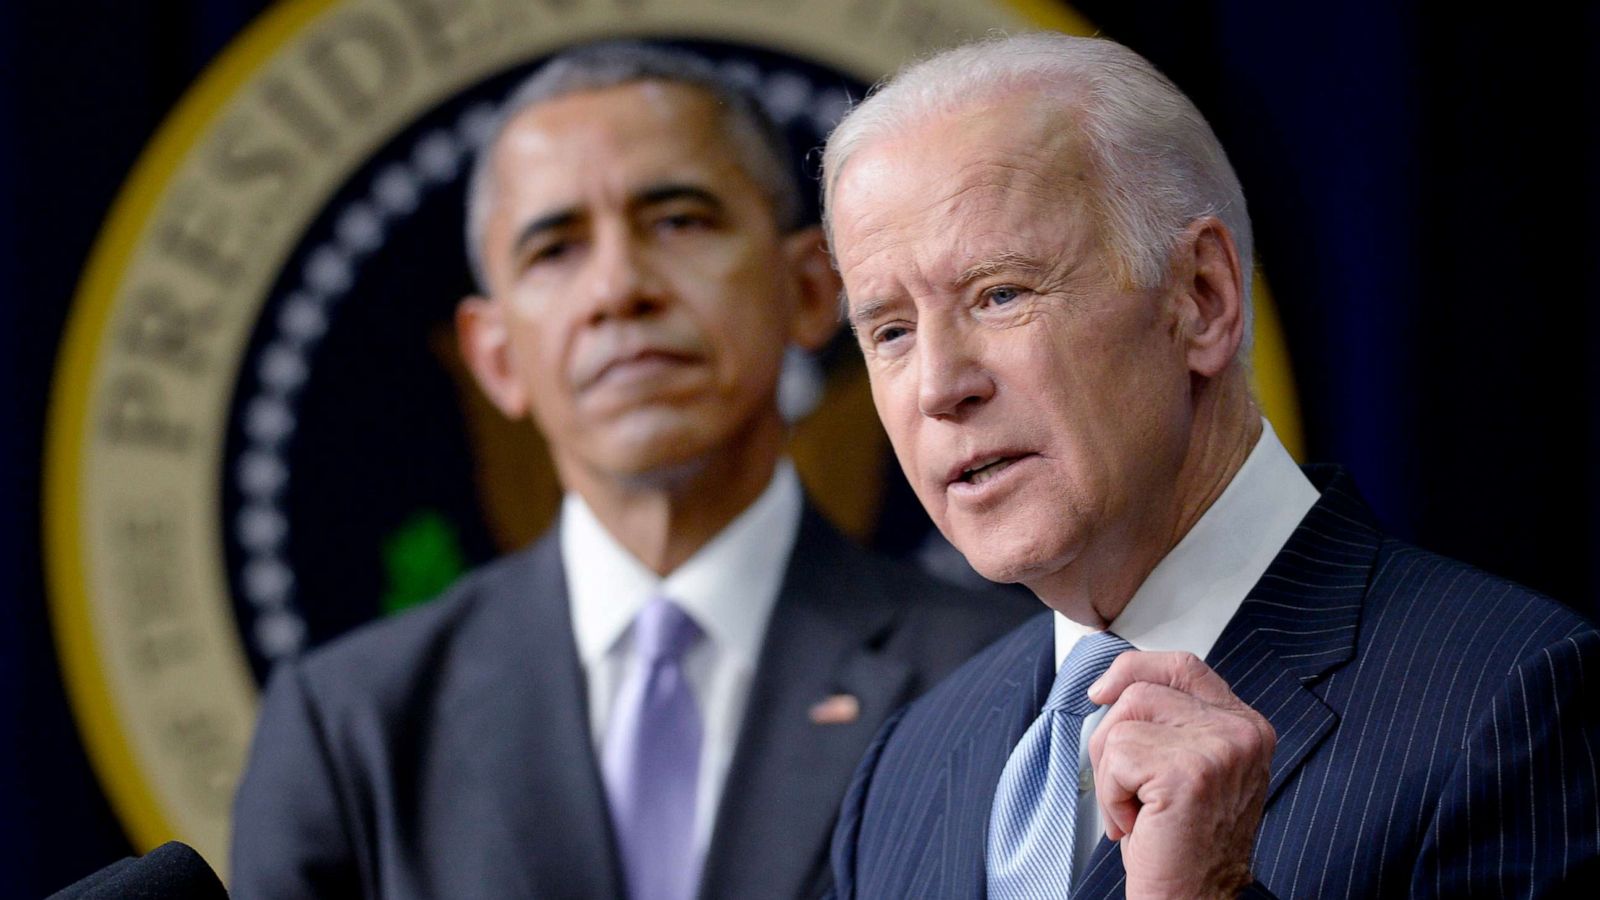 Obama endorses former Vice President Joe Biden for president - ABC News